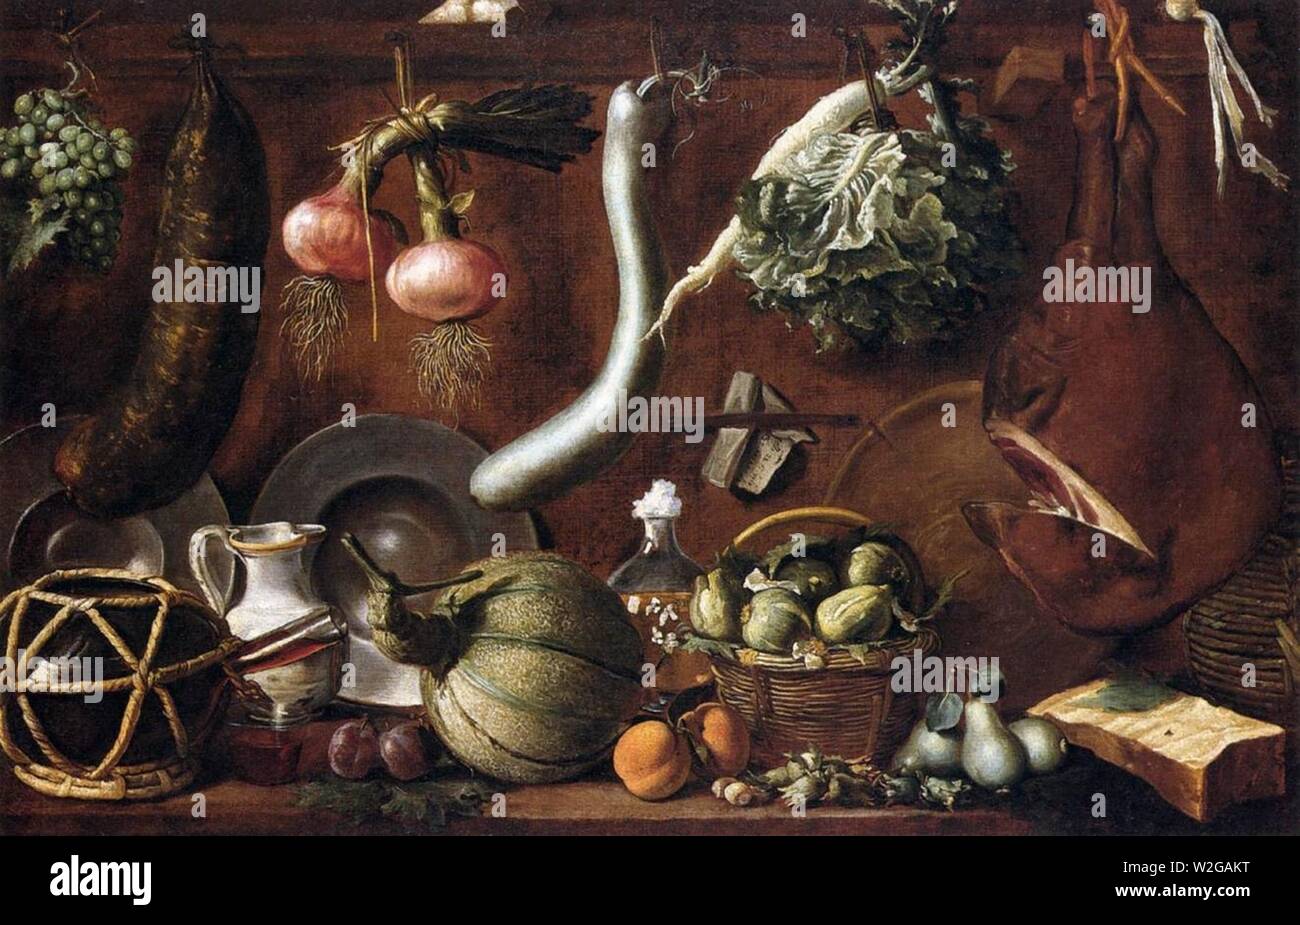 Chimenti da Empoli, Jacopo - Still Life - 17th c. Stock Photo